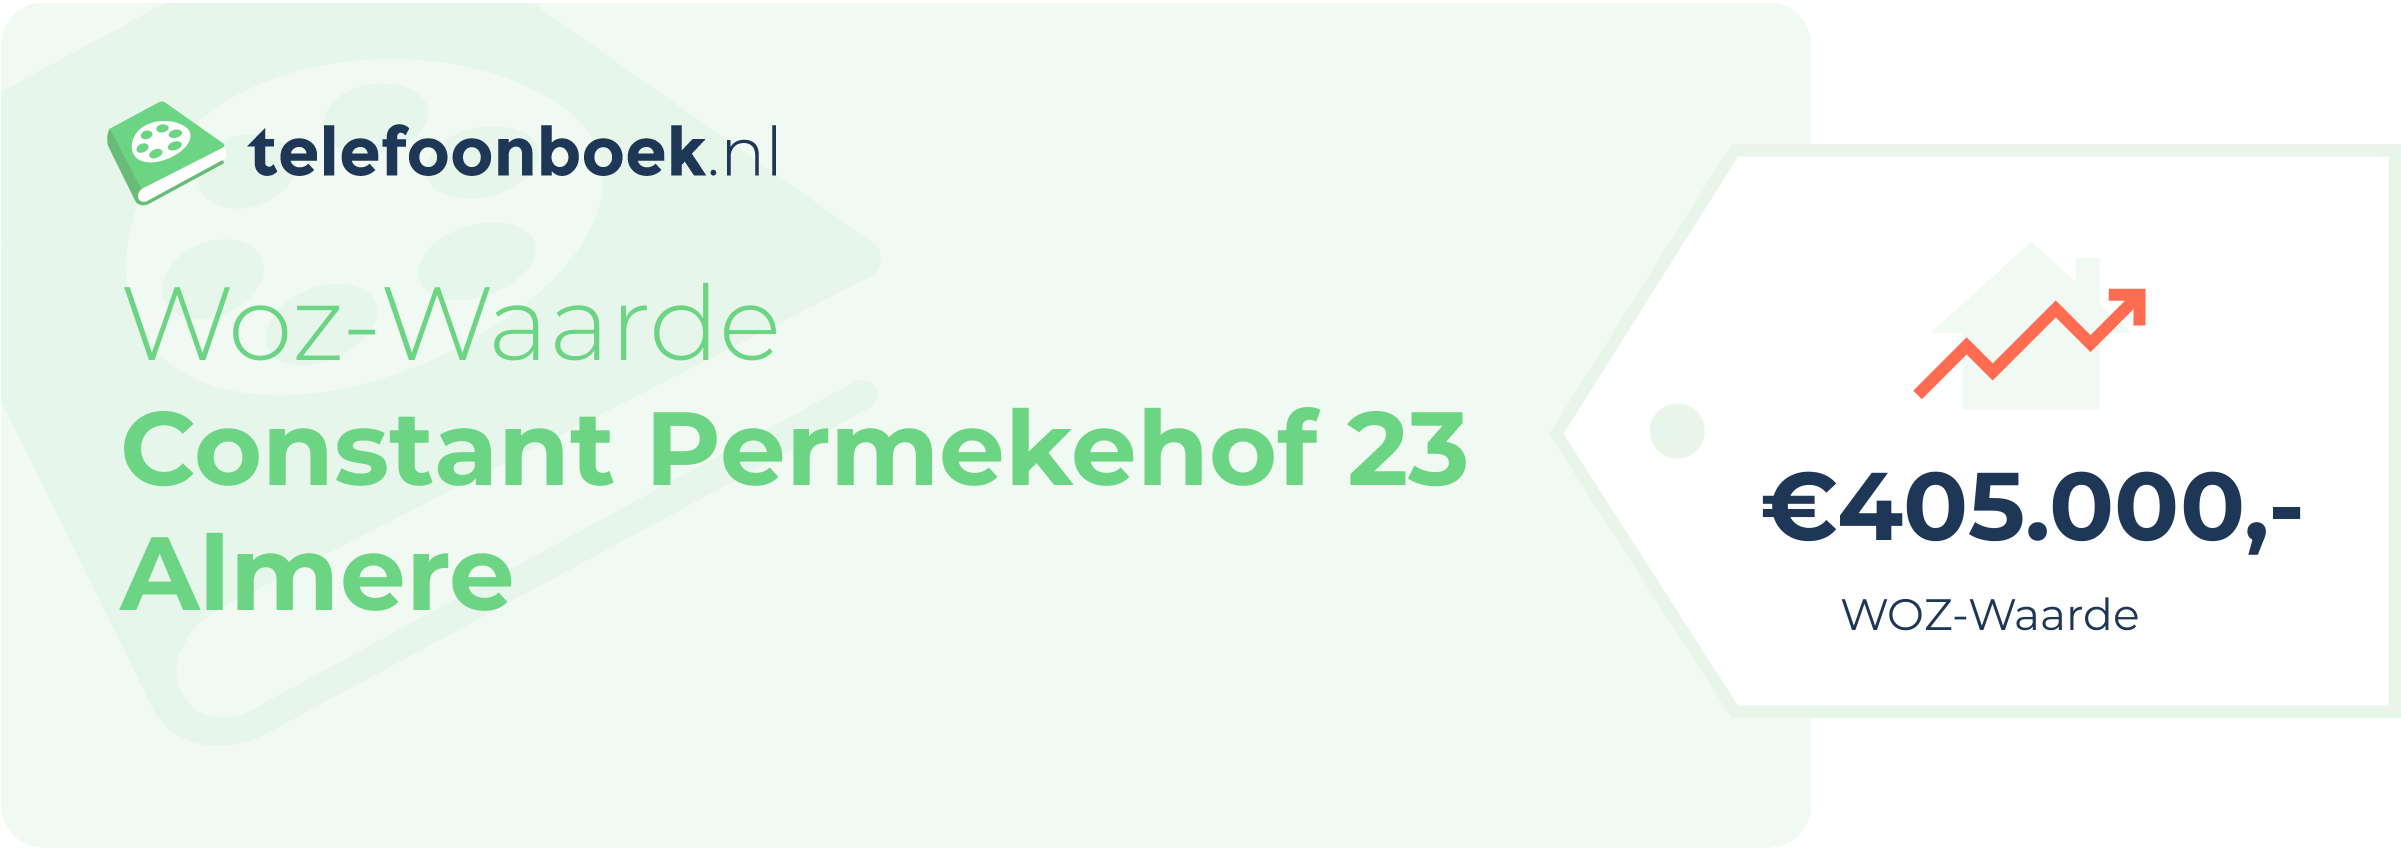 WOZ-waarde Constant Permekehof 23 Almere